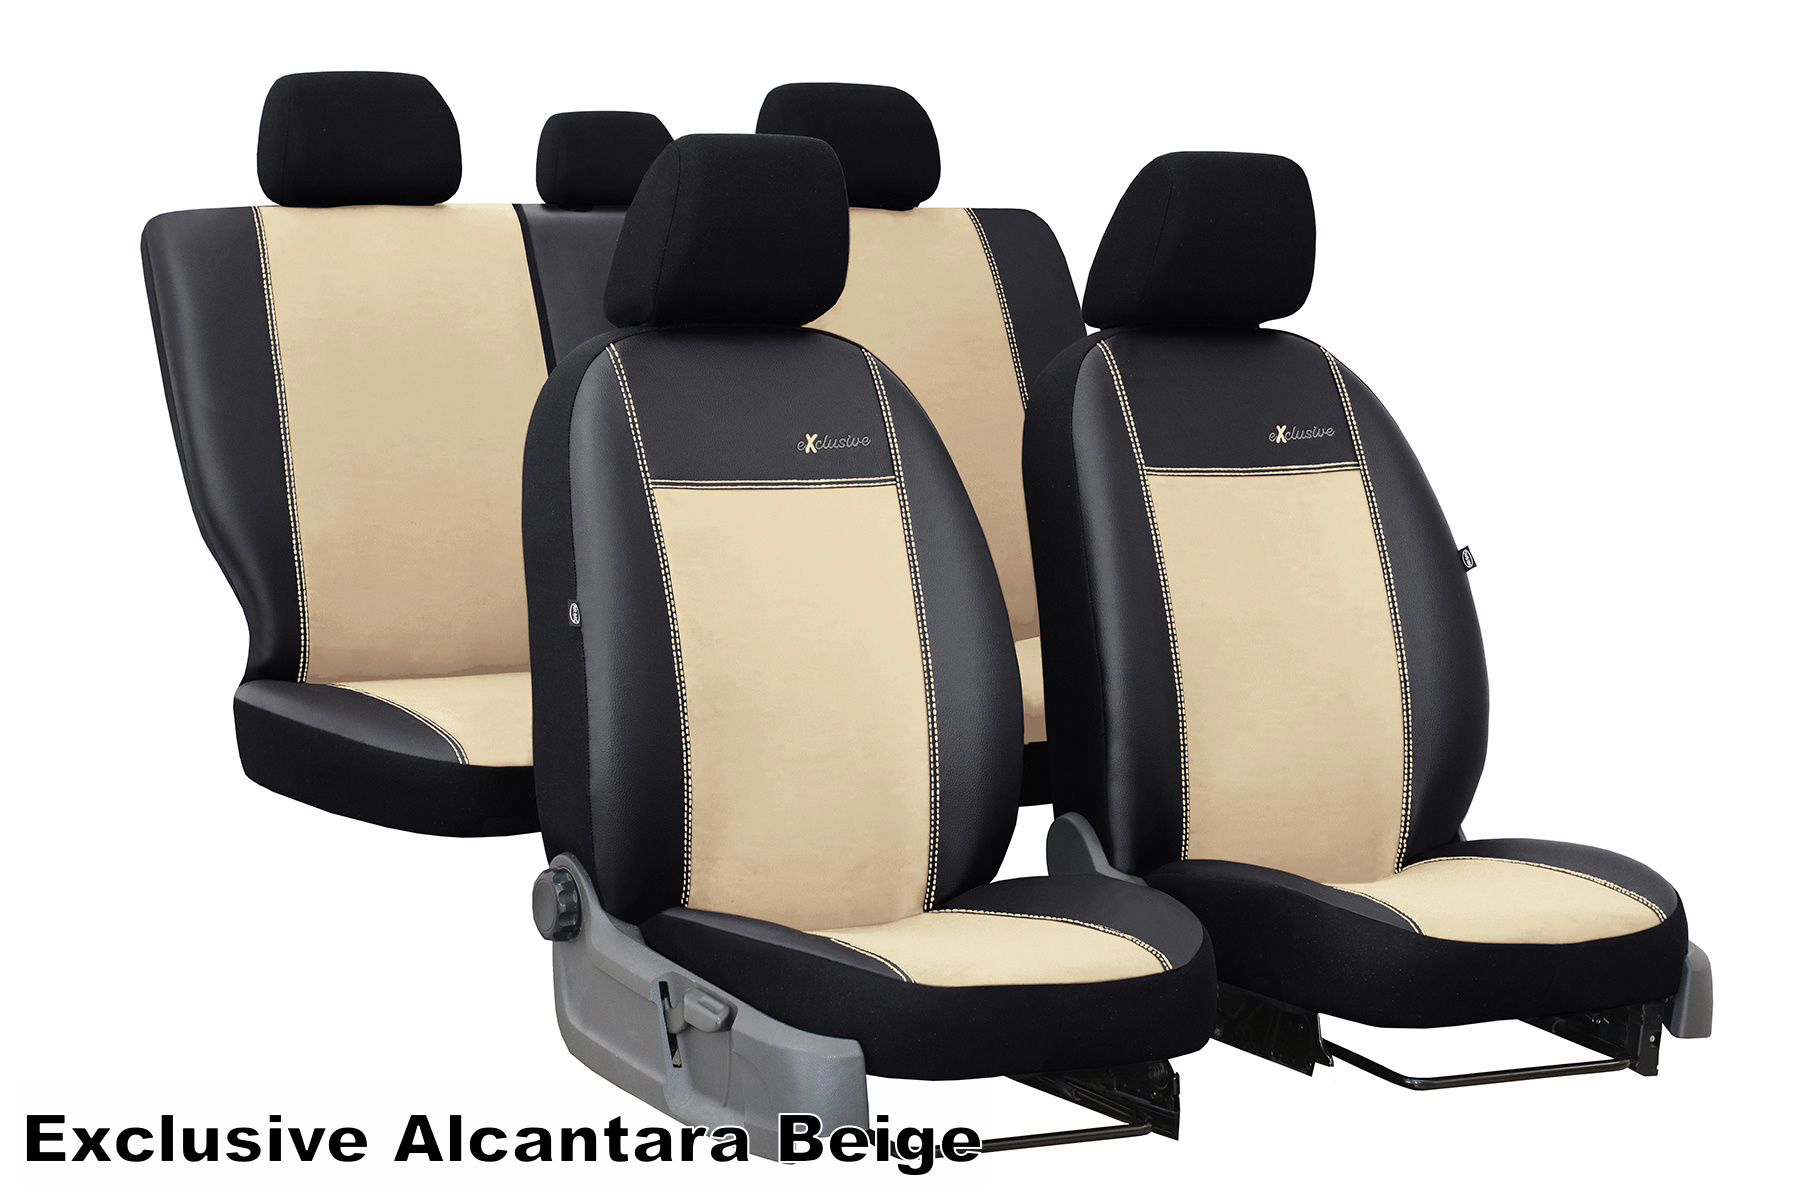 Sitzbezüge Auto Leder Autositzbezüge Universal Set für Audi A3 A4